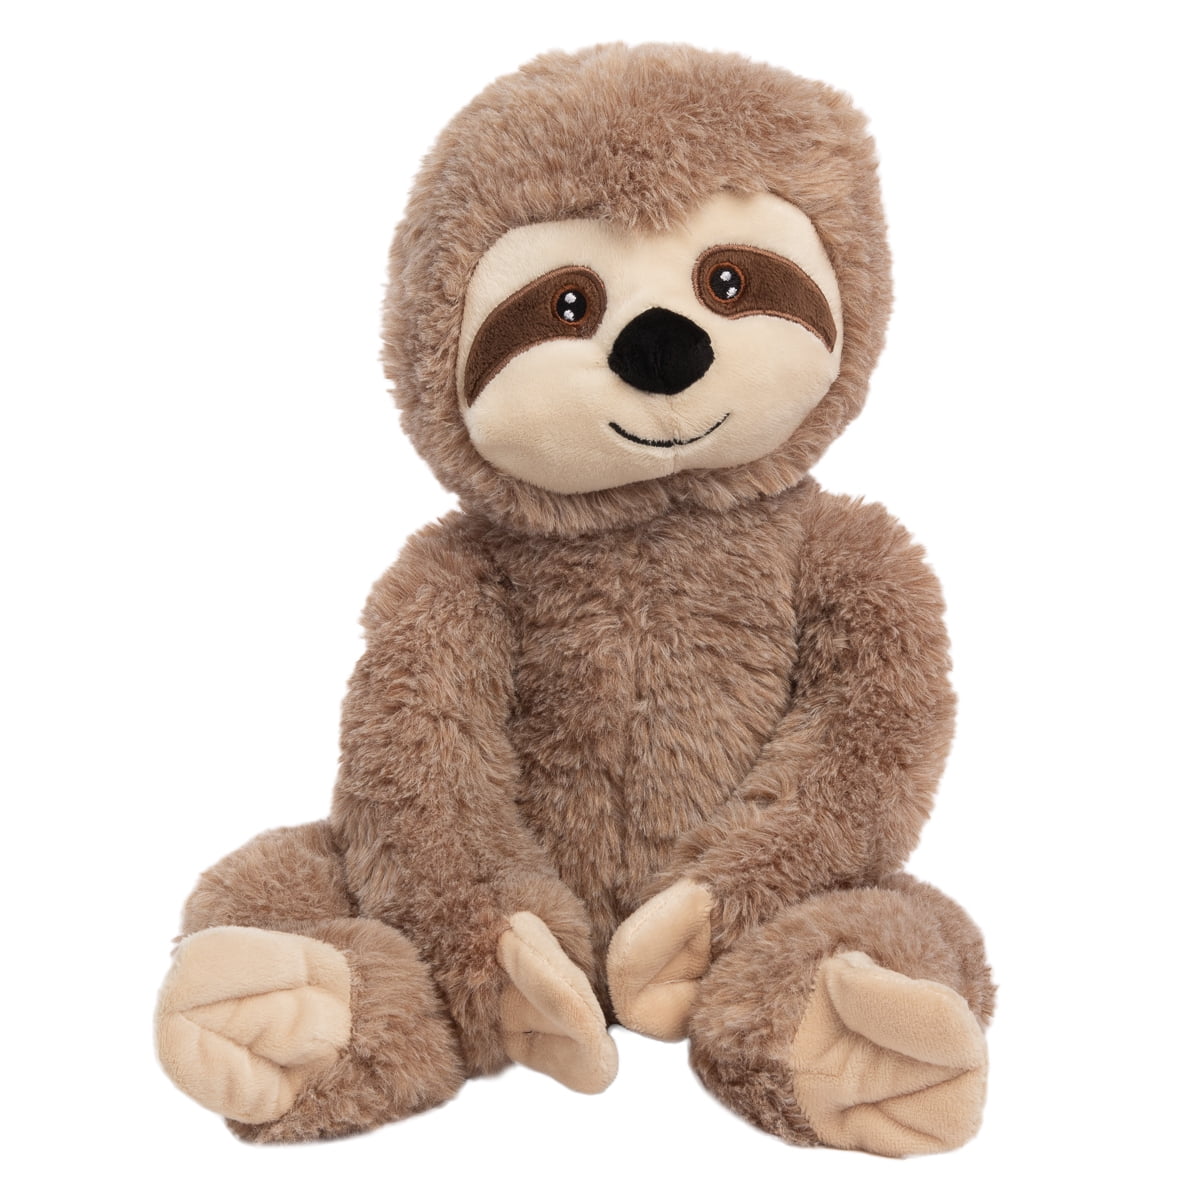 baby sloth stuffed animal